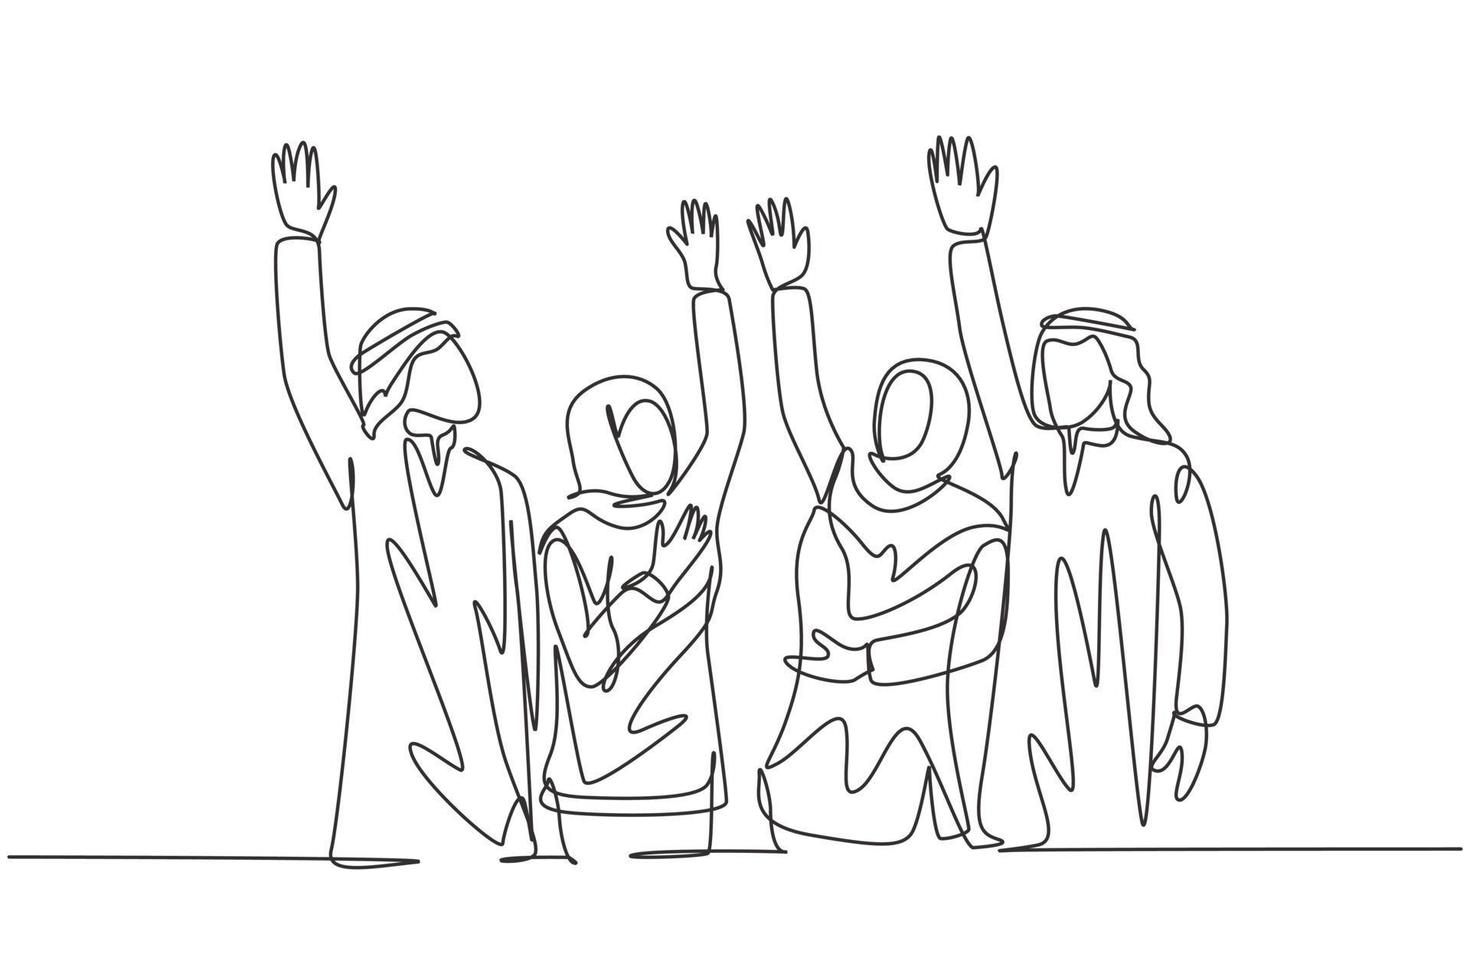 een enkele lijntekening van jonge gelukkige moslimzakenmensen steken hun hand op. Saoedi-Arabische zakenlieden met shmag, kandora, hoofddoek, thobe ghutra. doorlopende lijn tekenen ontwerp vectorillustratie vector